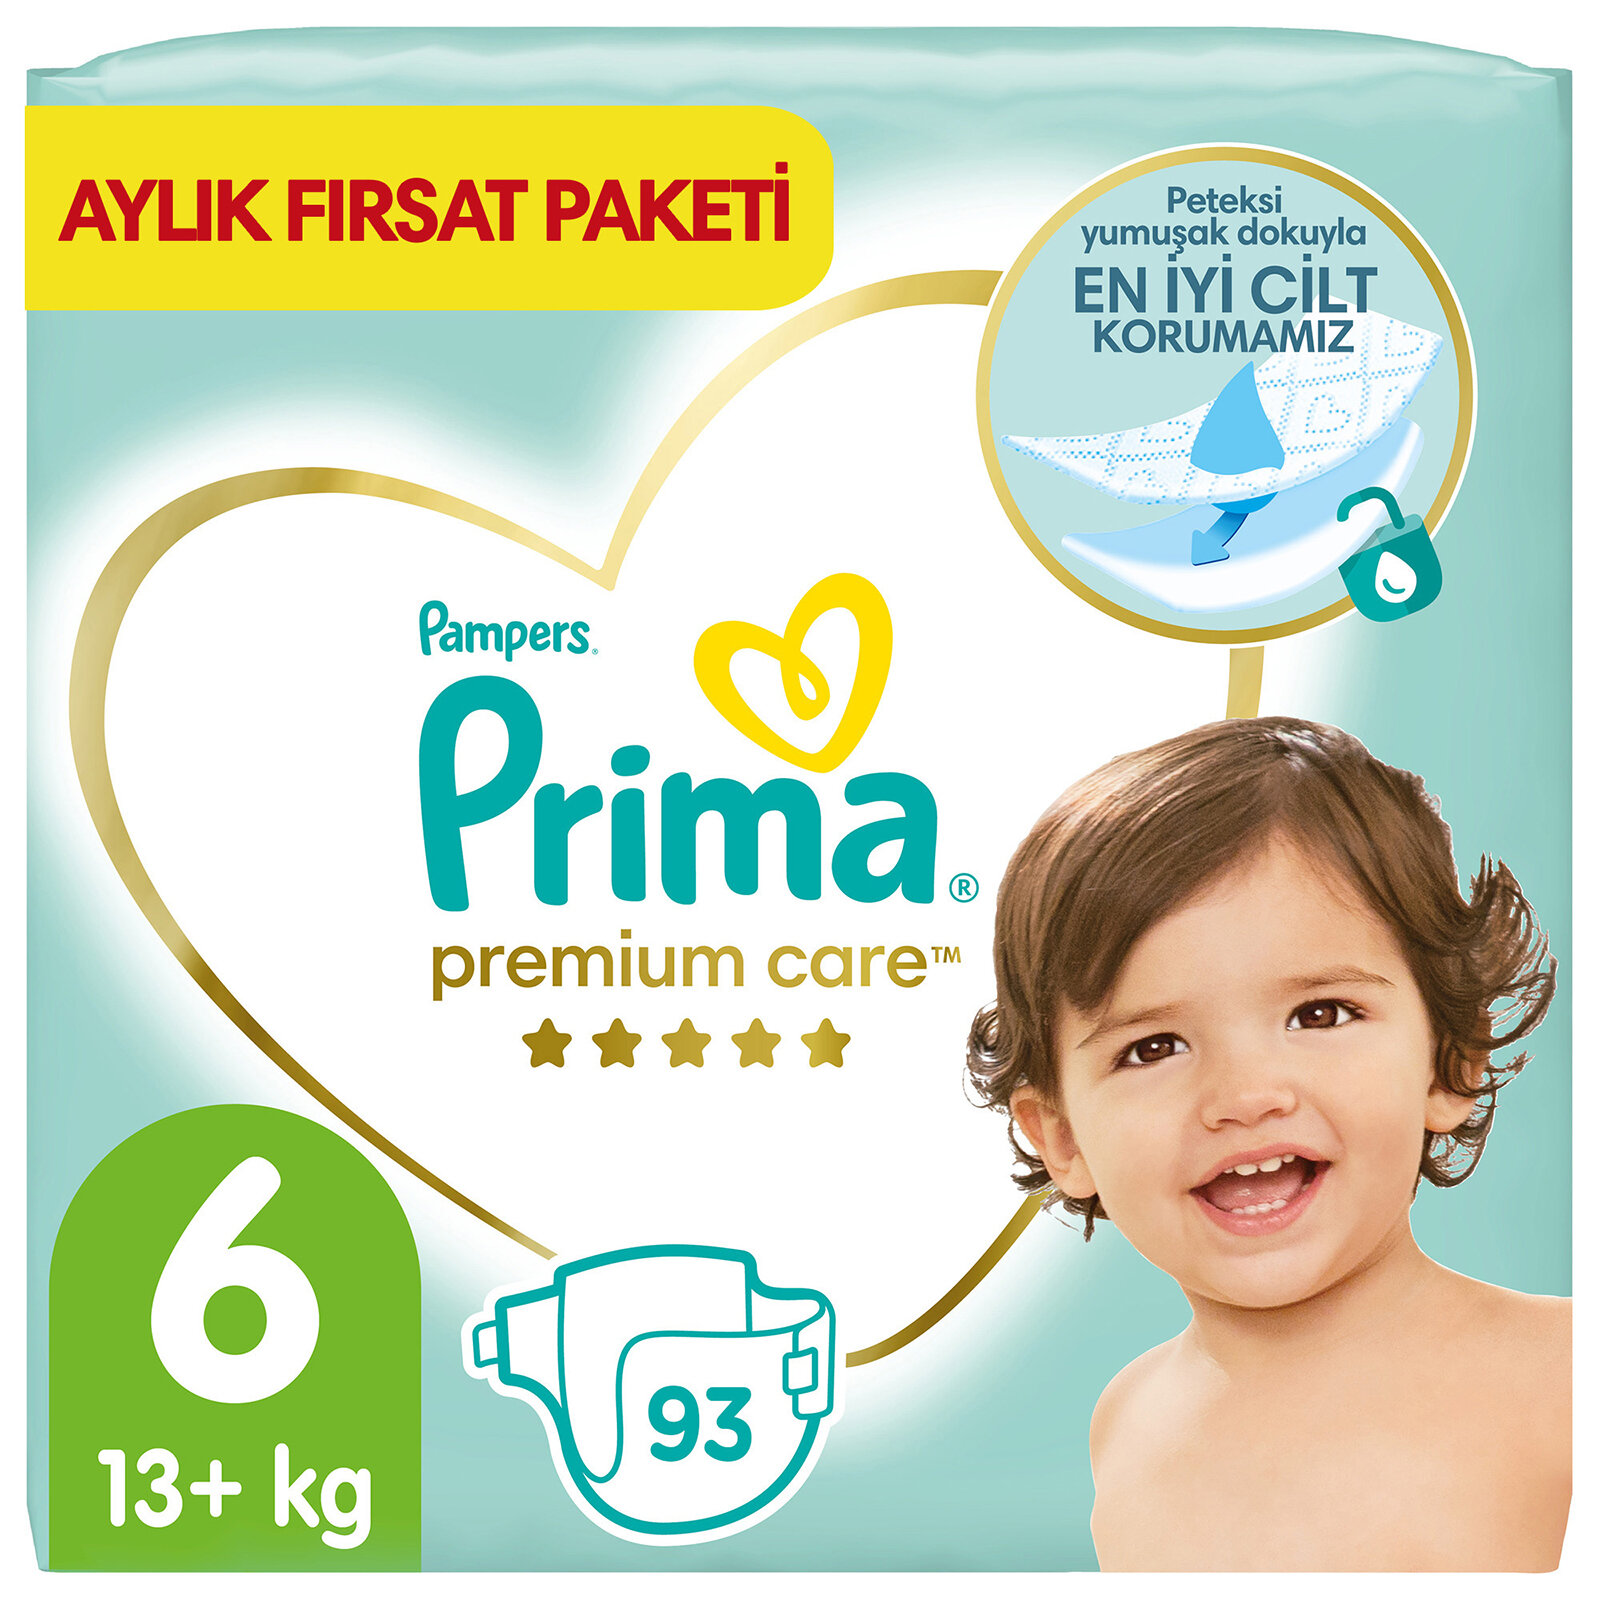 Bebek Bezi Premium Care 6 Beden Extra Large Aylık Fırsat Paketi 13+ kg 93 Adet